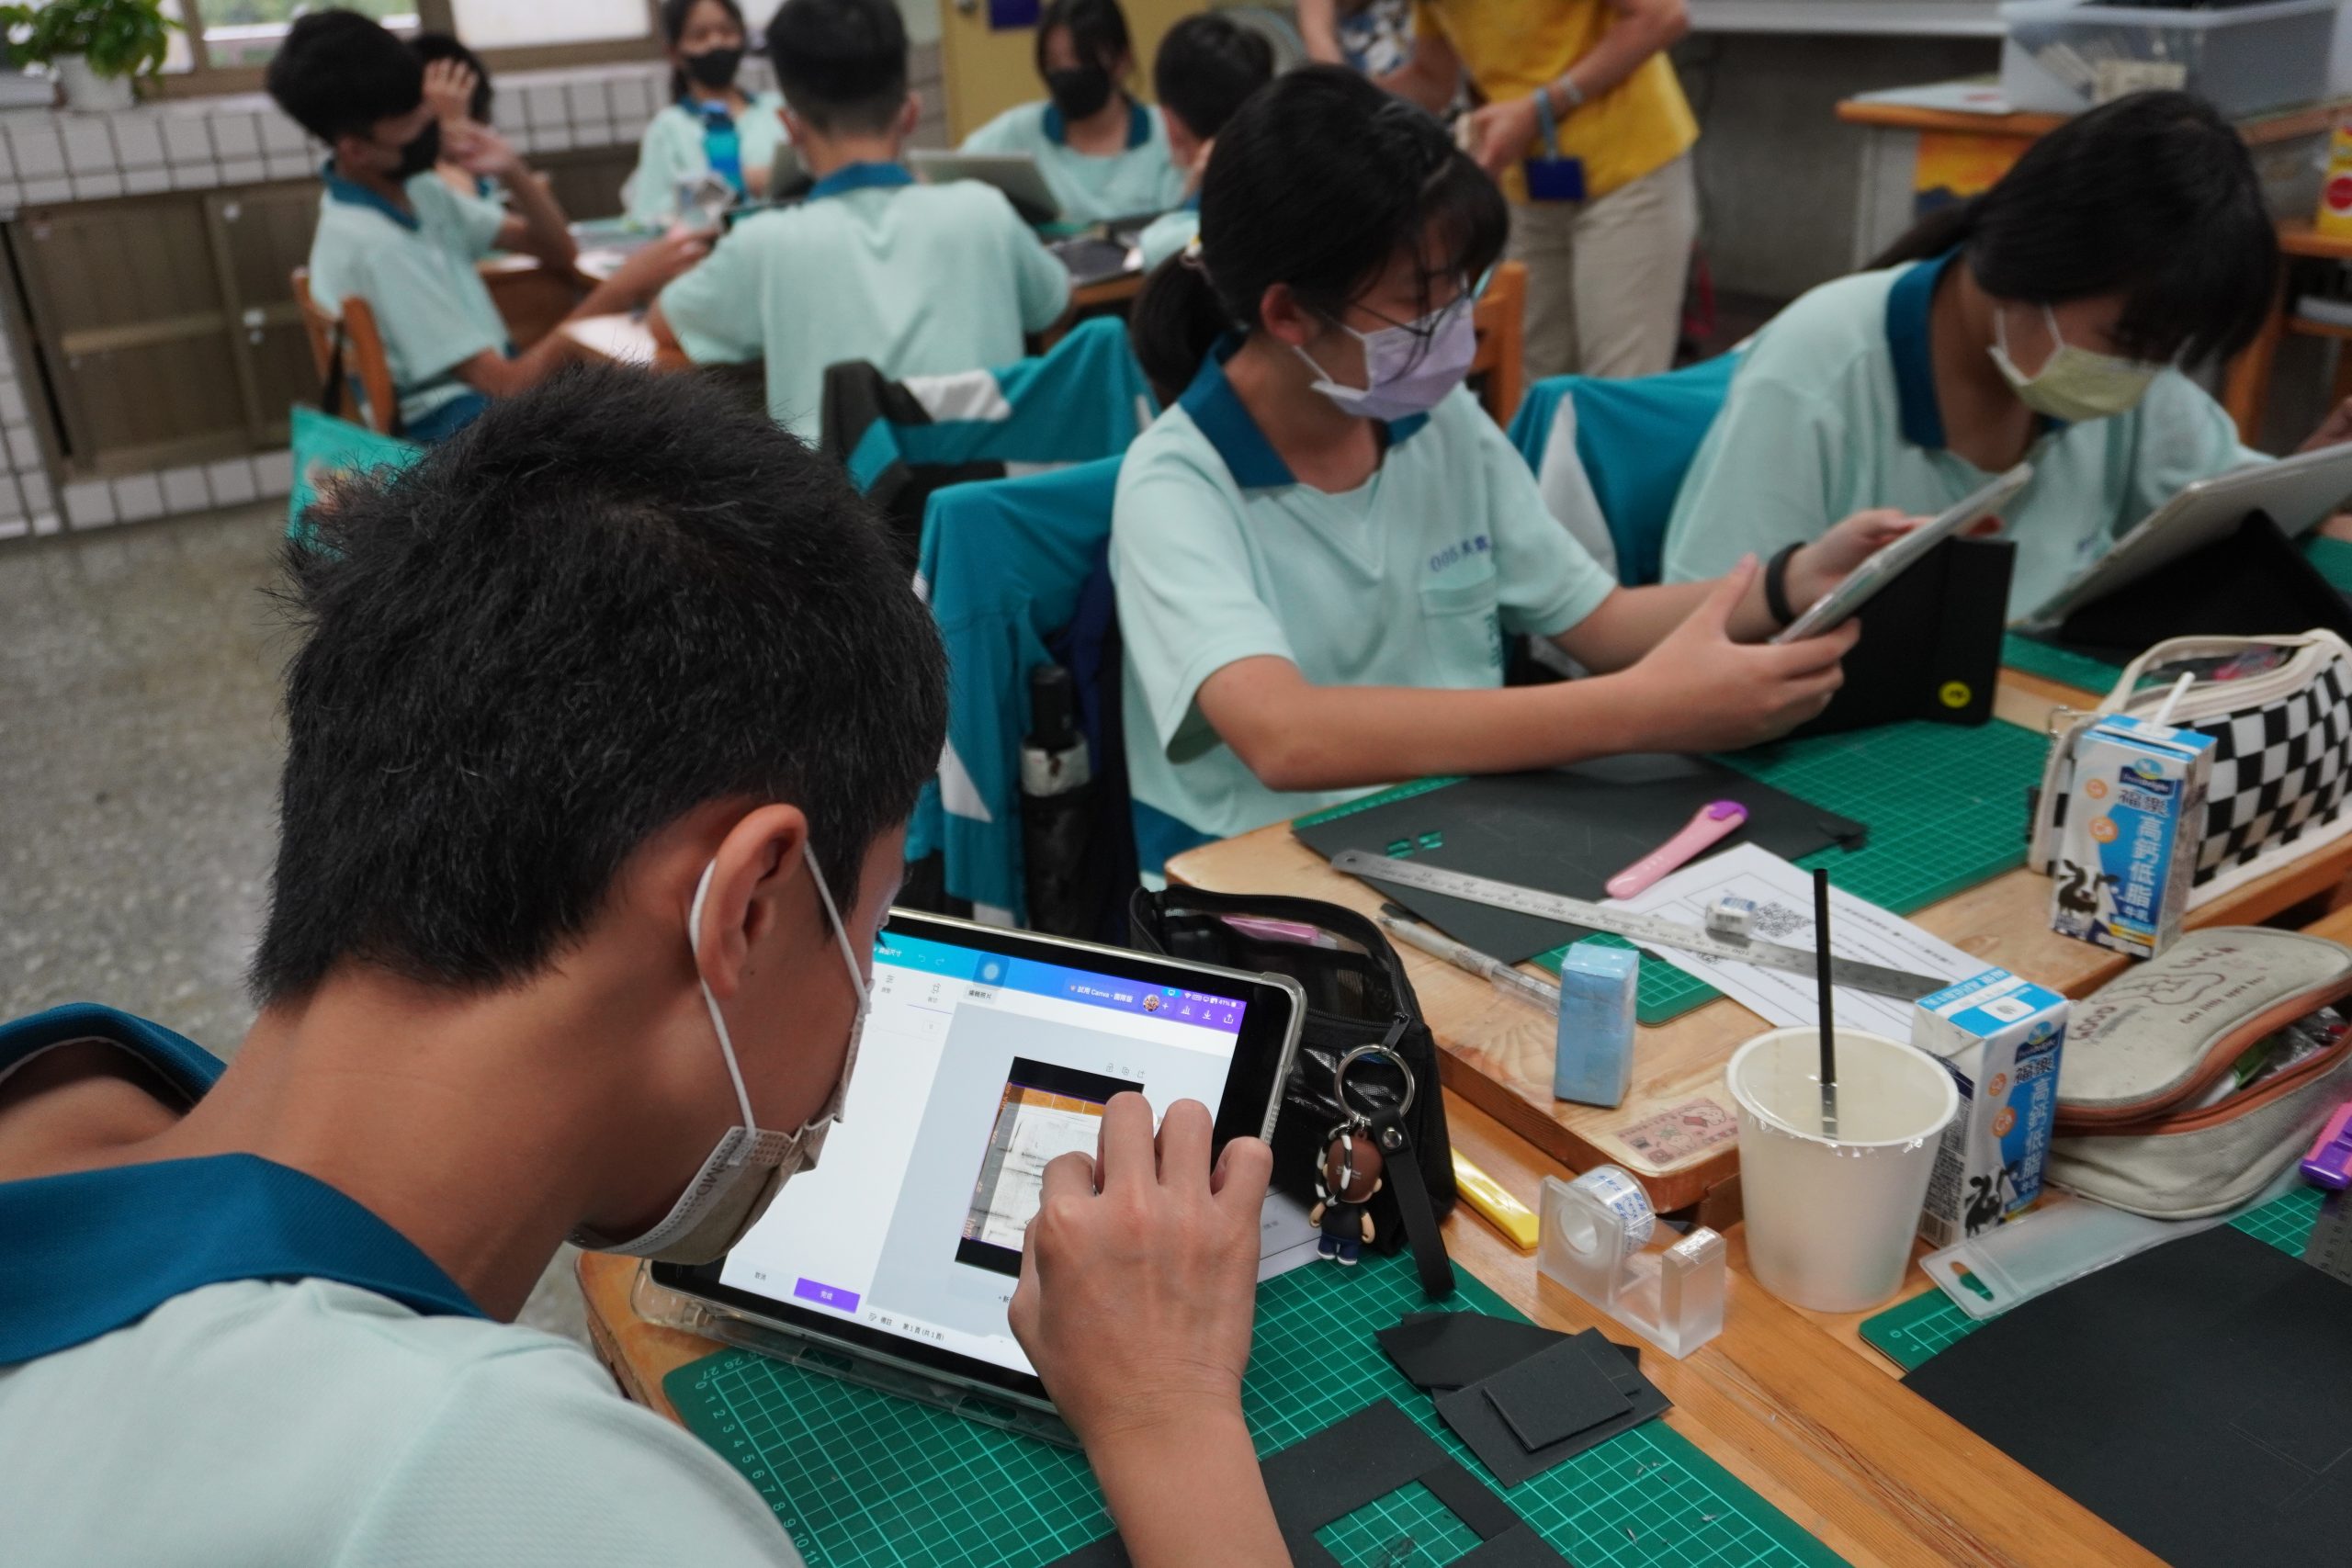 111學年度第二學期於臺中市立萬和國民中學施辦自拍拼圖課程實作紀錄系列照片共24張